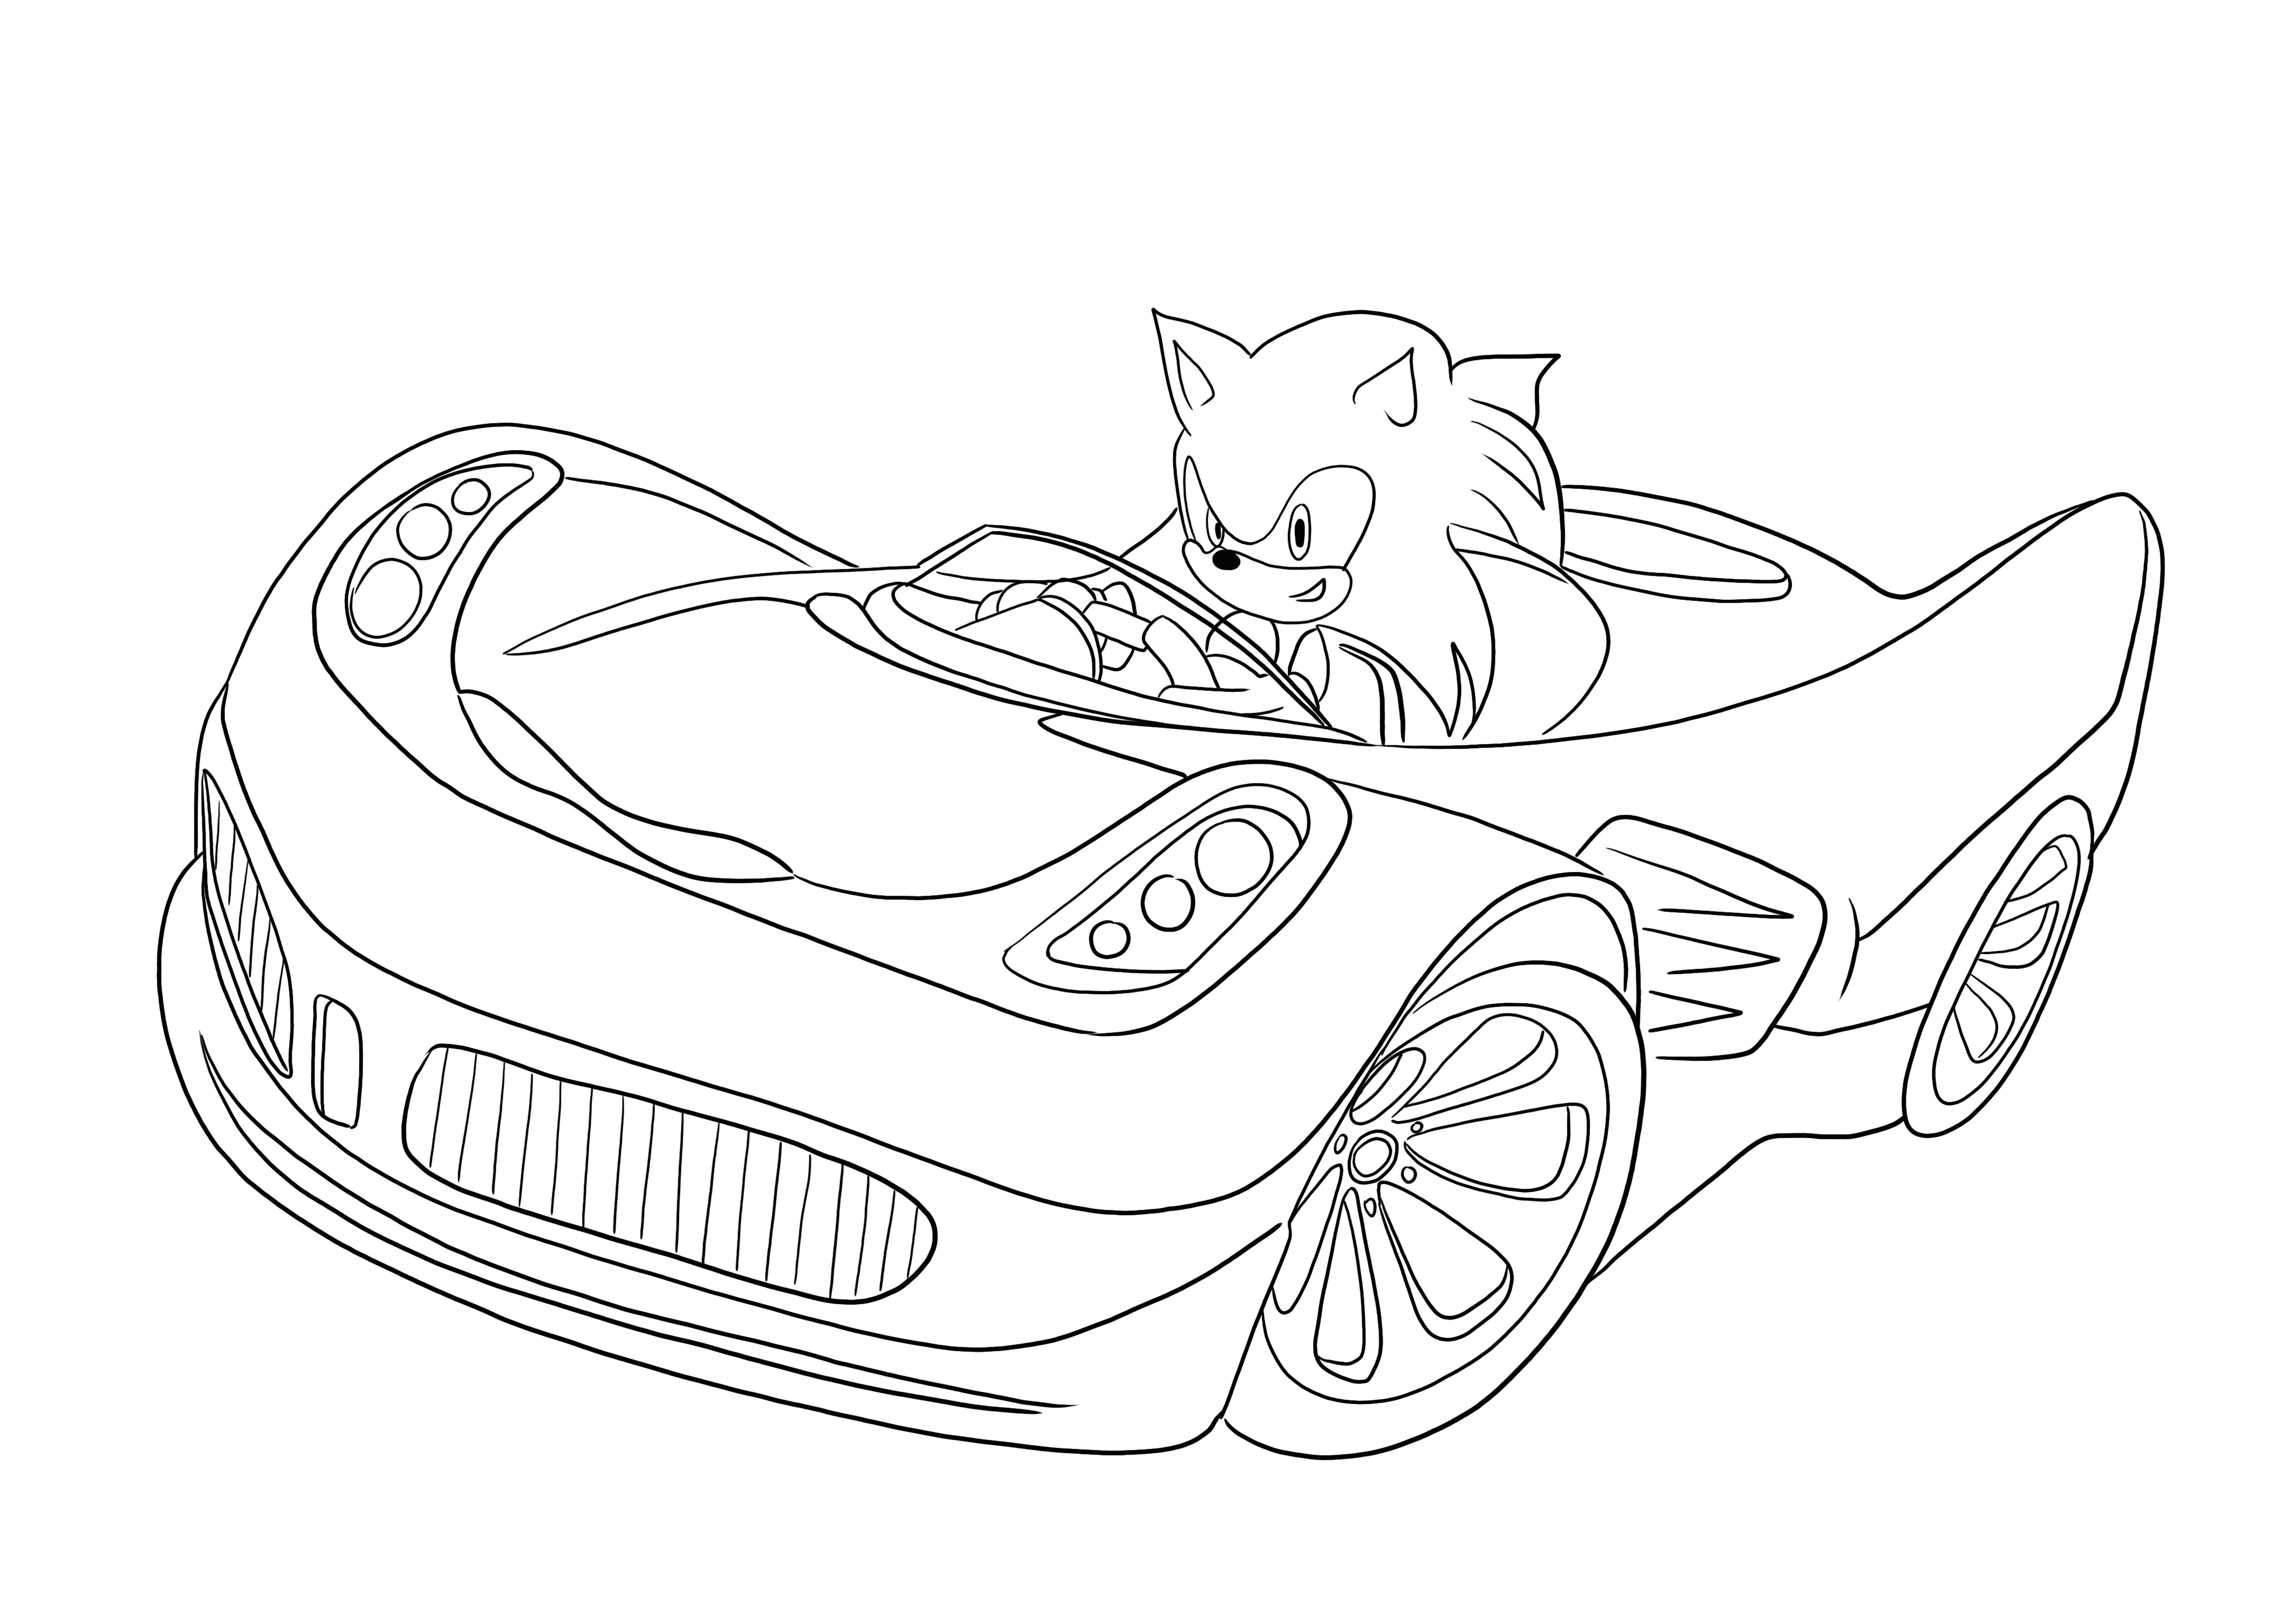 Dibujo para colorear gratis de Sonic montando un coche para imprimir y usar con niños